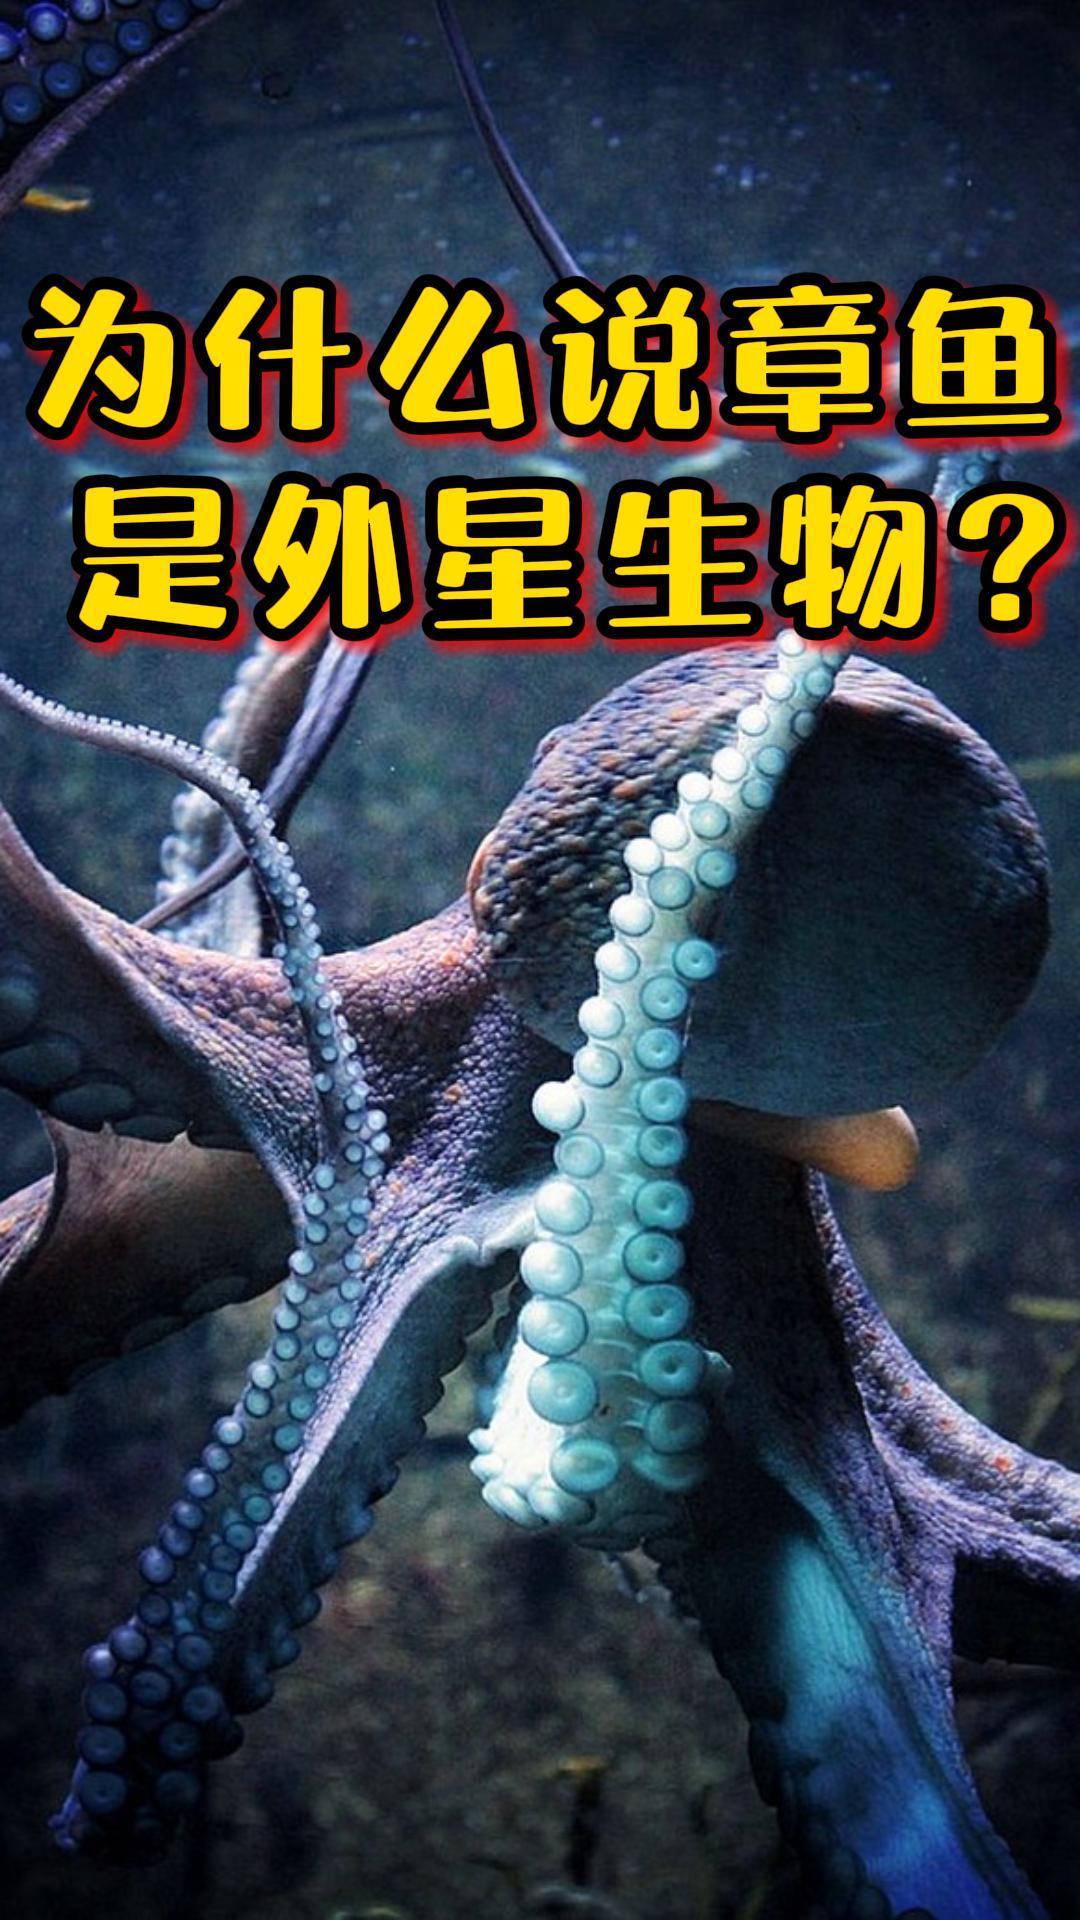 为什么章鱼被称为外星生物九个大脑三个心脏